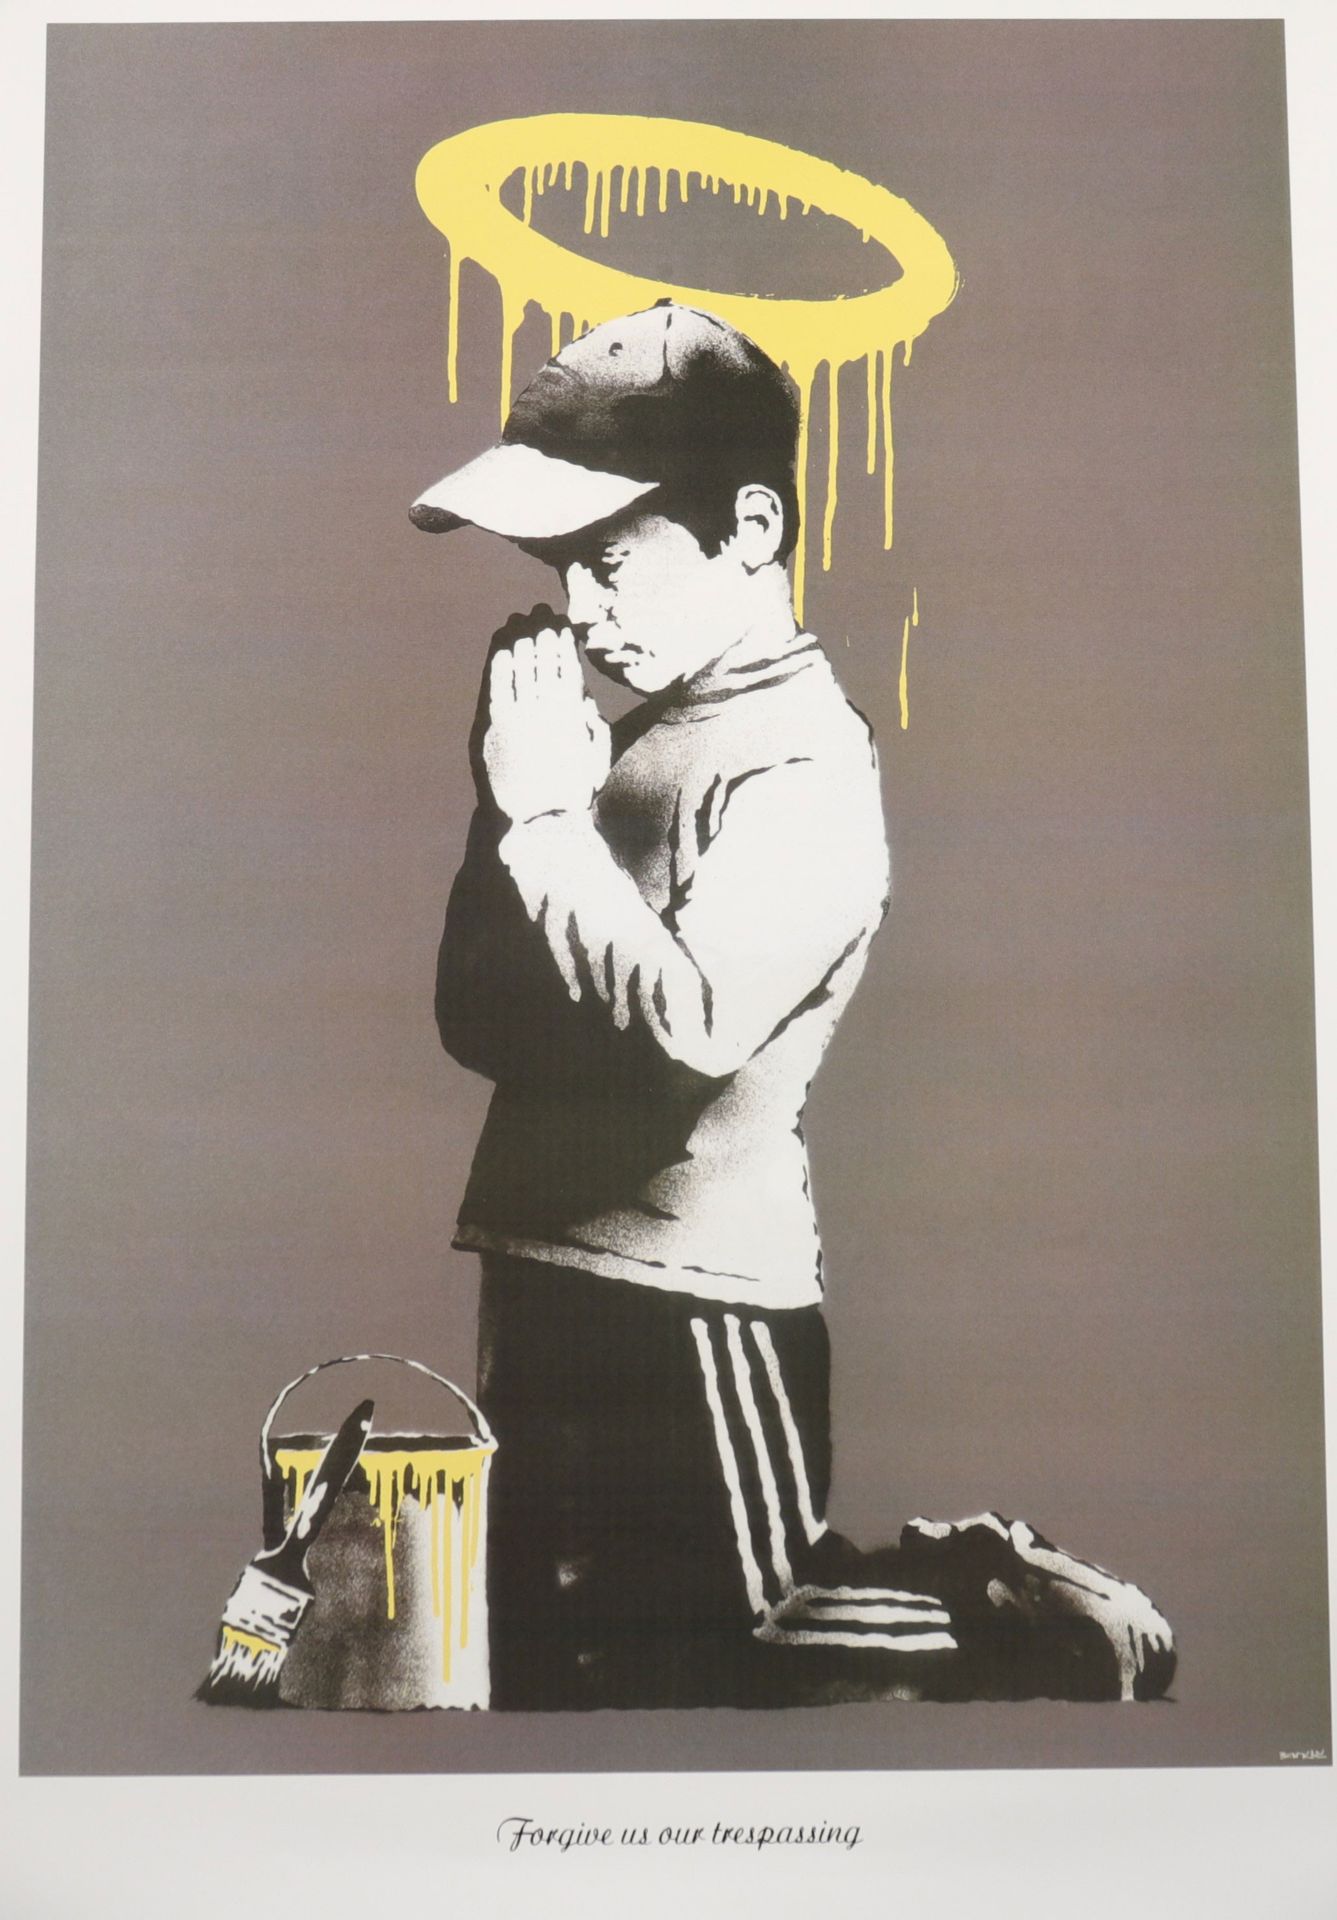 Banksy (d'aprés) "Forgive us our trespassing" Impression offset Signé sur la pla&hellip;